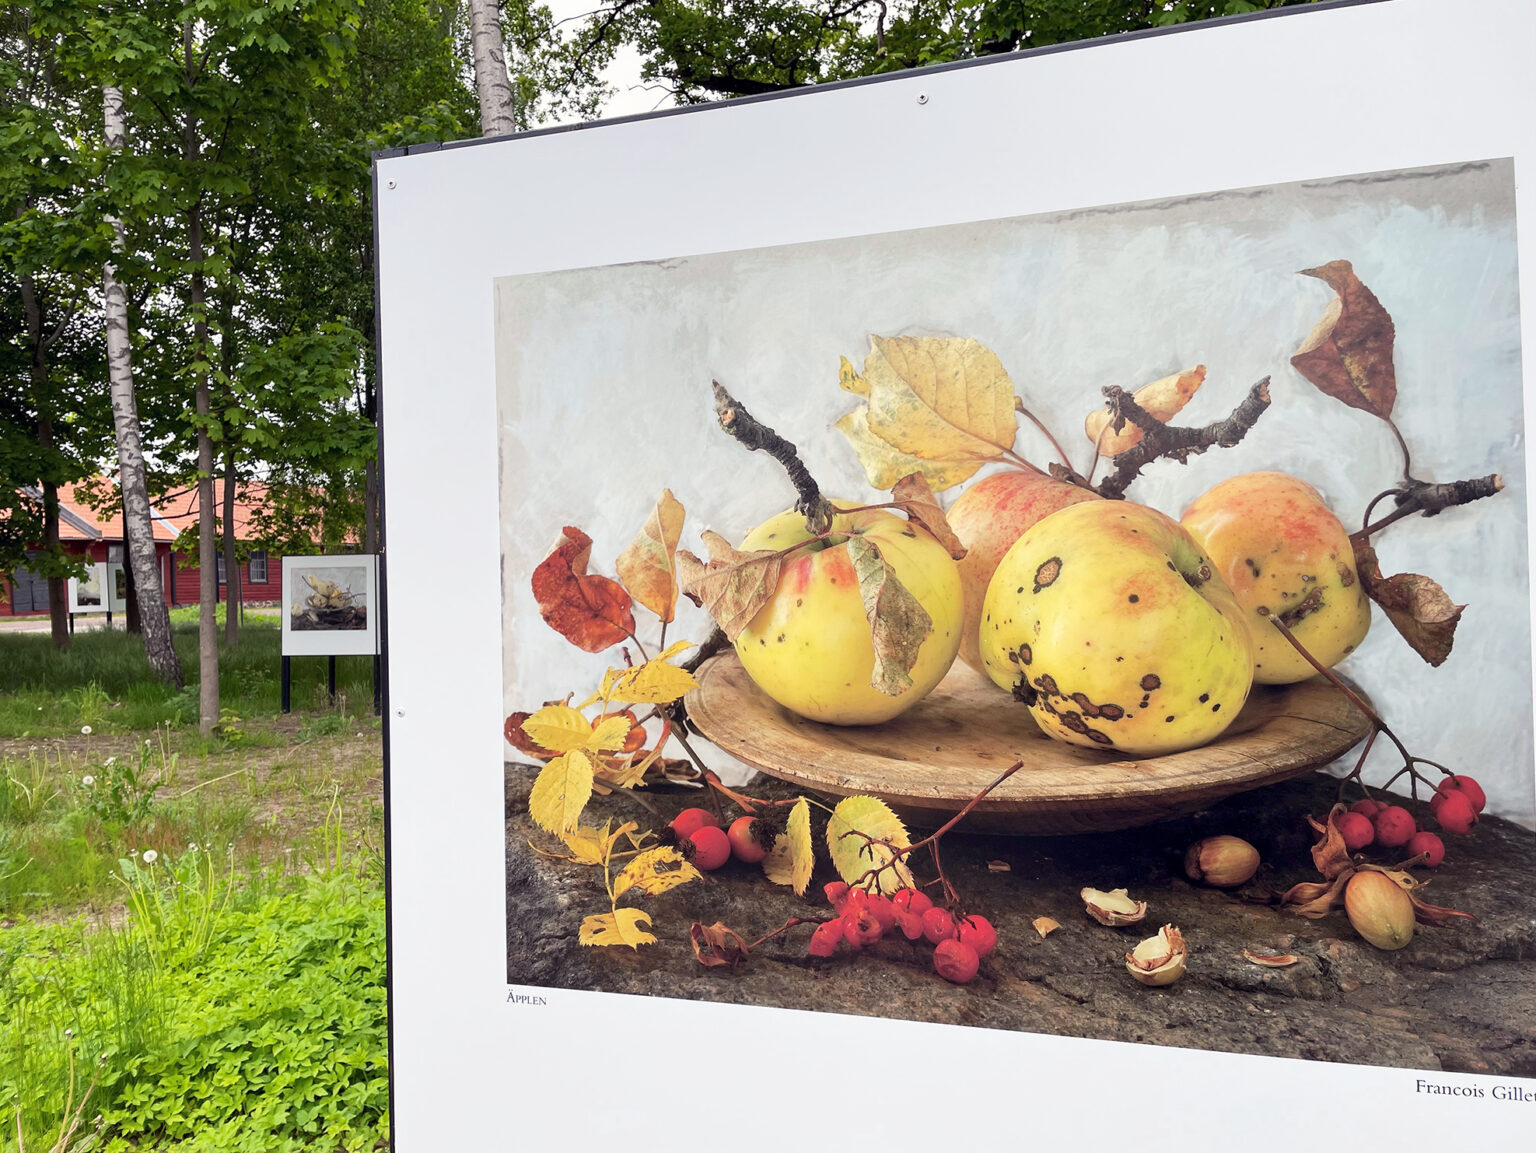 På de vita triangelformade skärmarna i Ringenparken syns olika typer av motiv från olika konstnärer. På skärmen i blickfånget ses flera fotograferade äpplen. rönnbär och löv i nedbrytning.